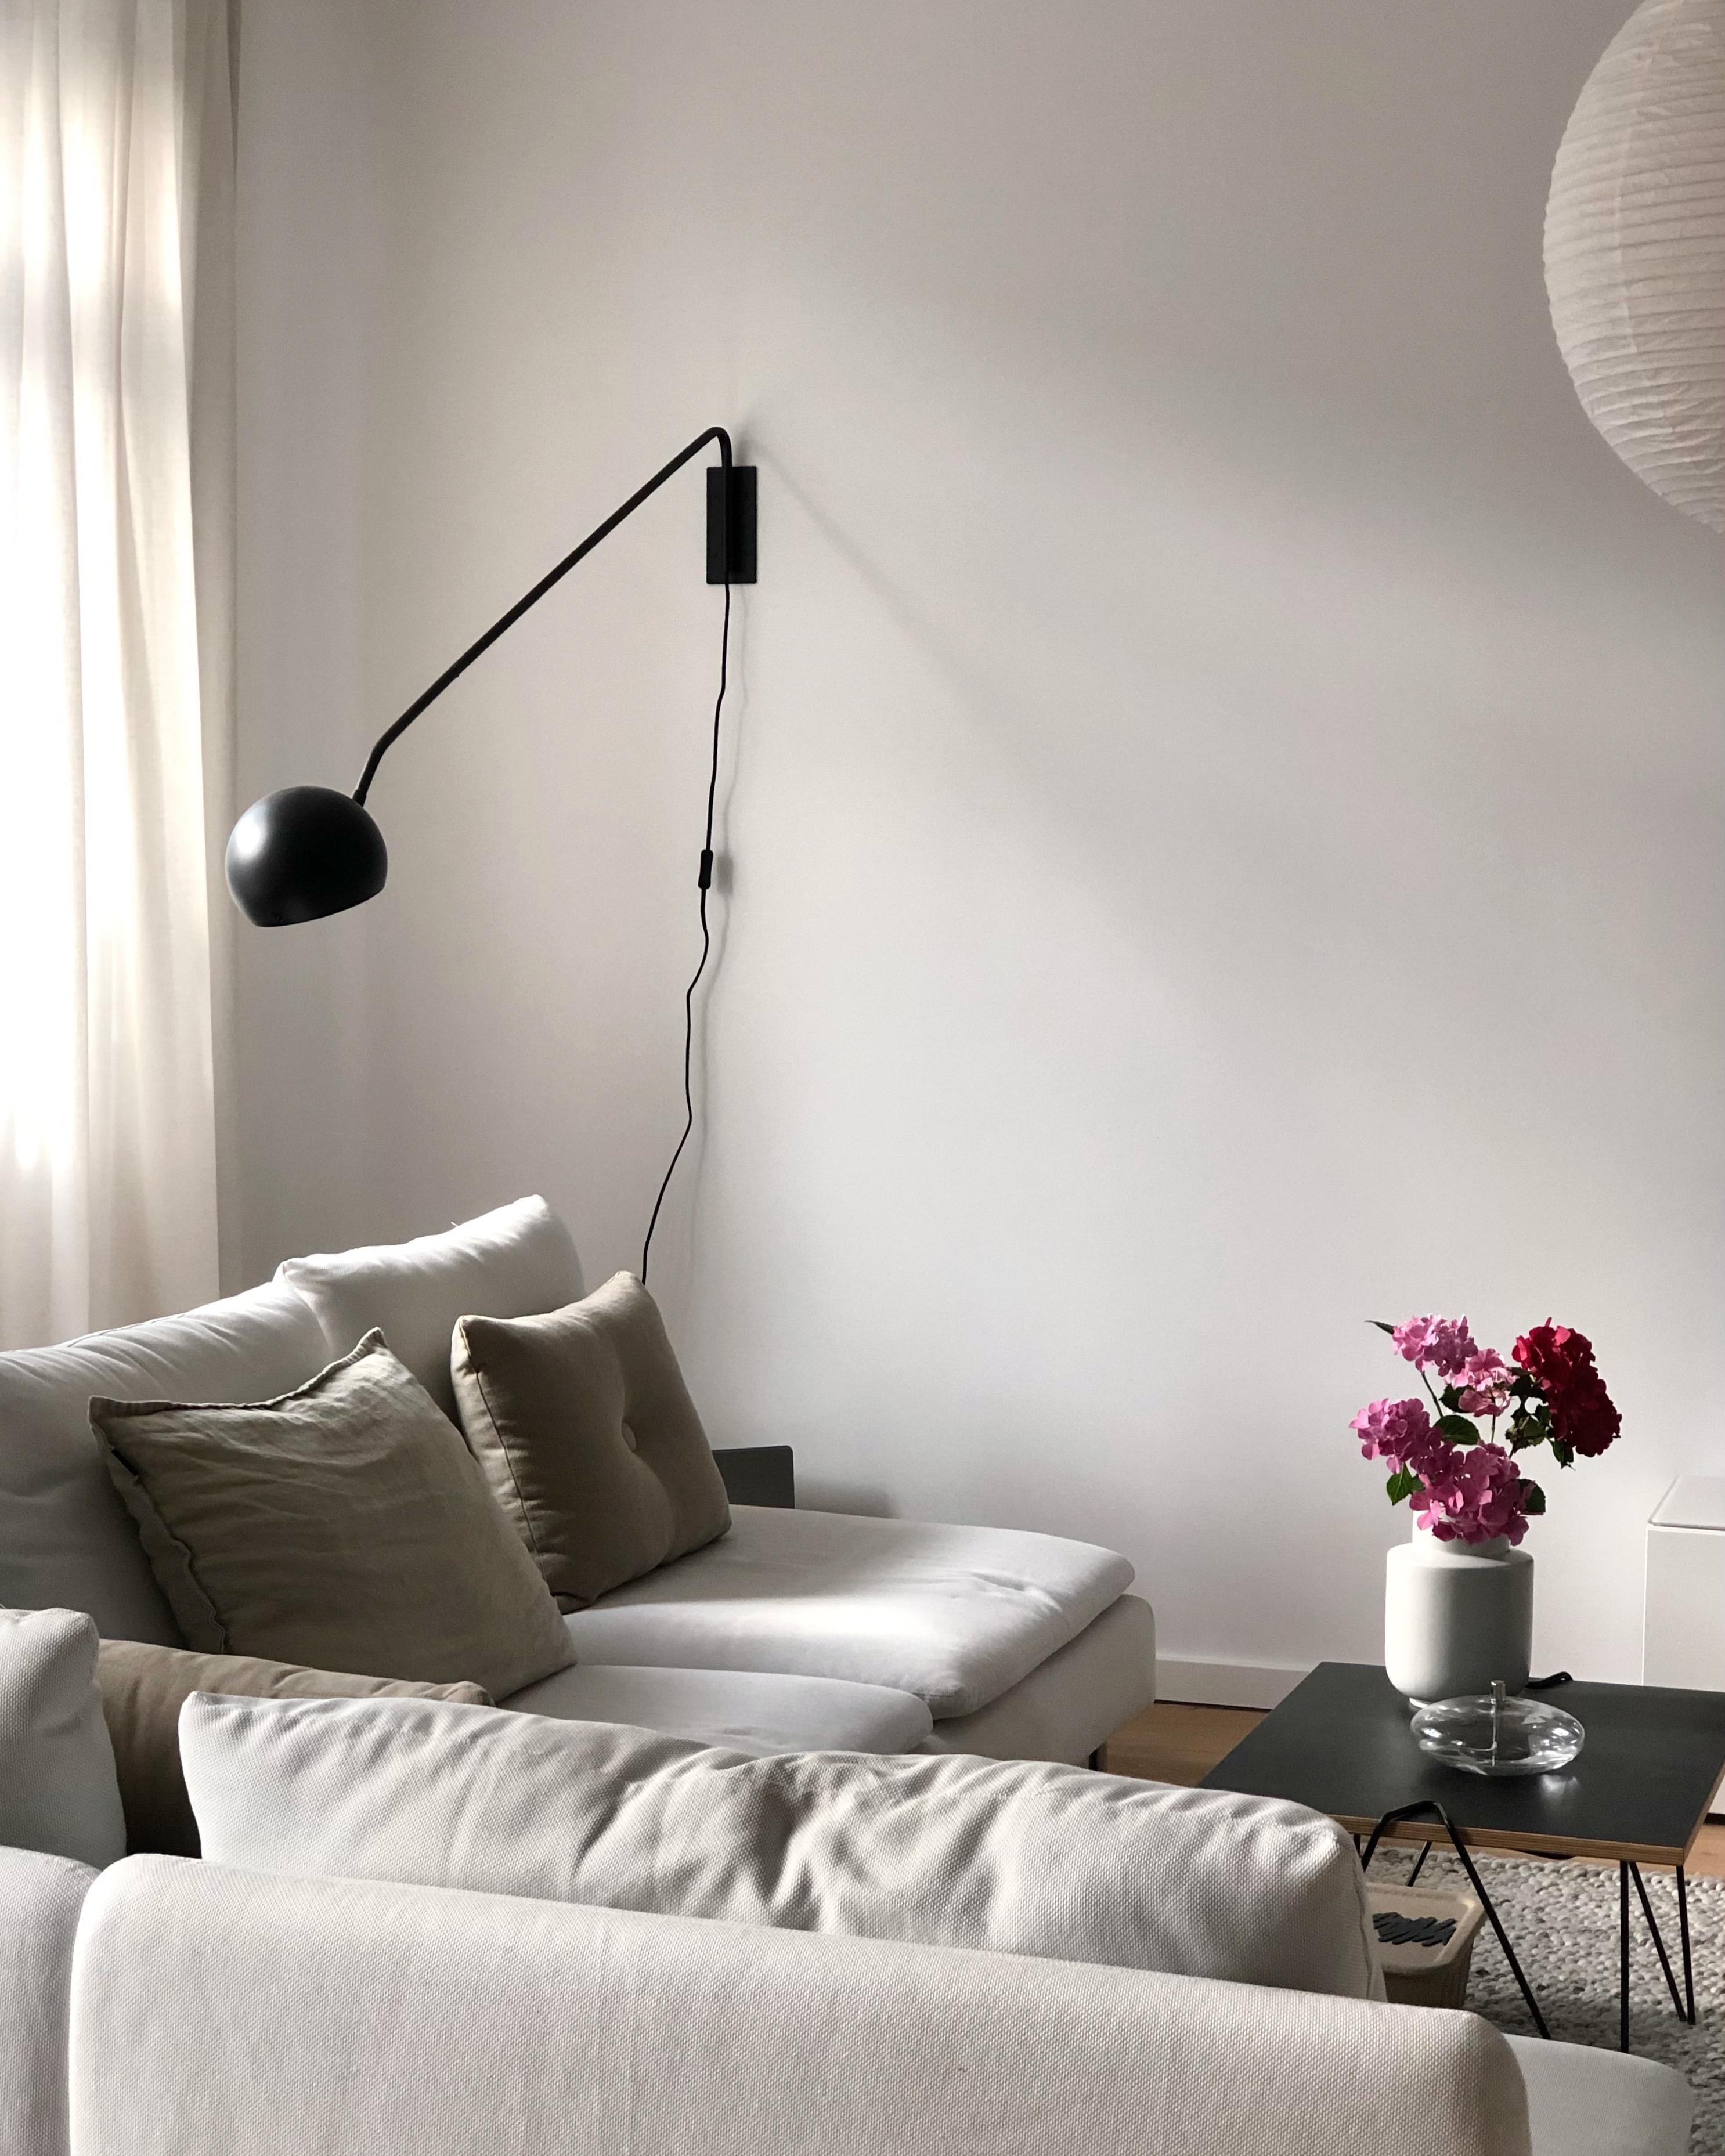 #wohnzimmer #livingroom #couch #interior #wanddeko #minimalism #nordic #scandi #couchstyle #home #freshflowers